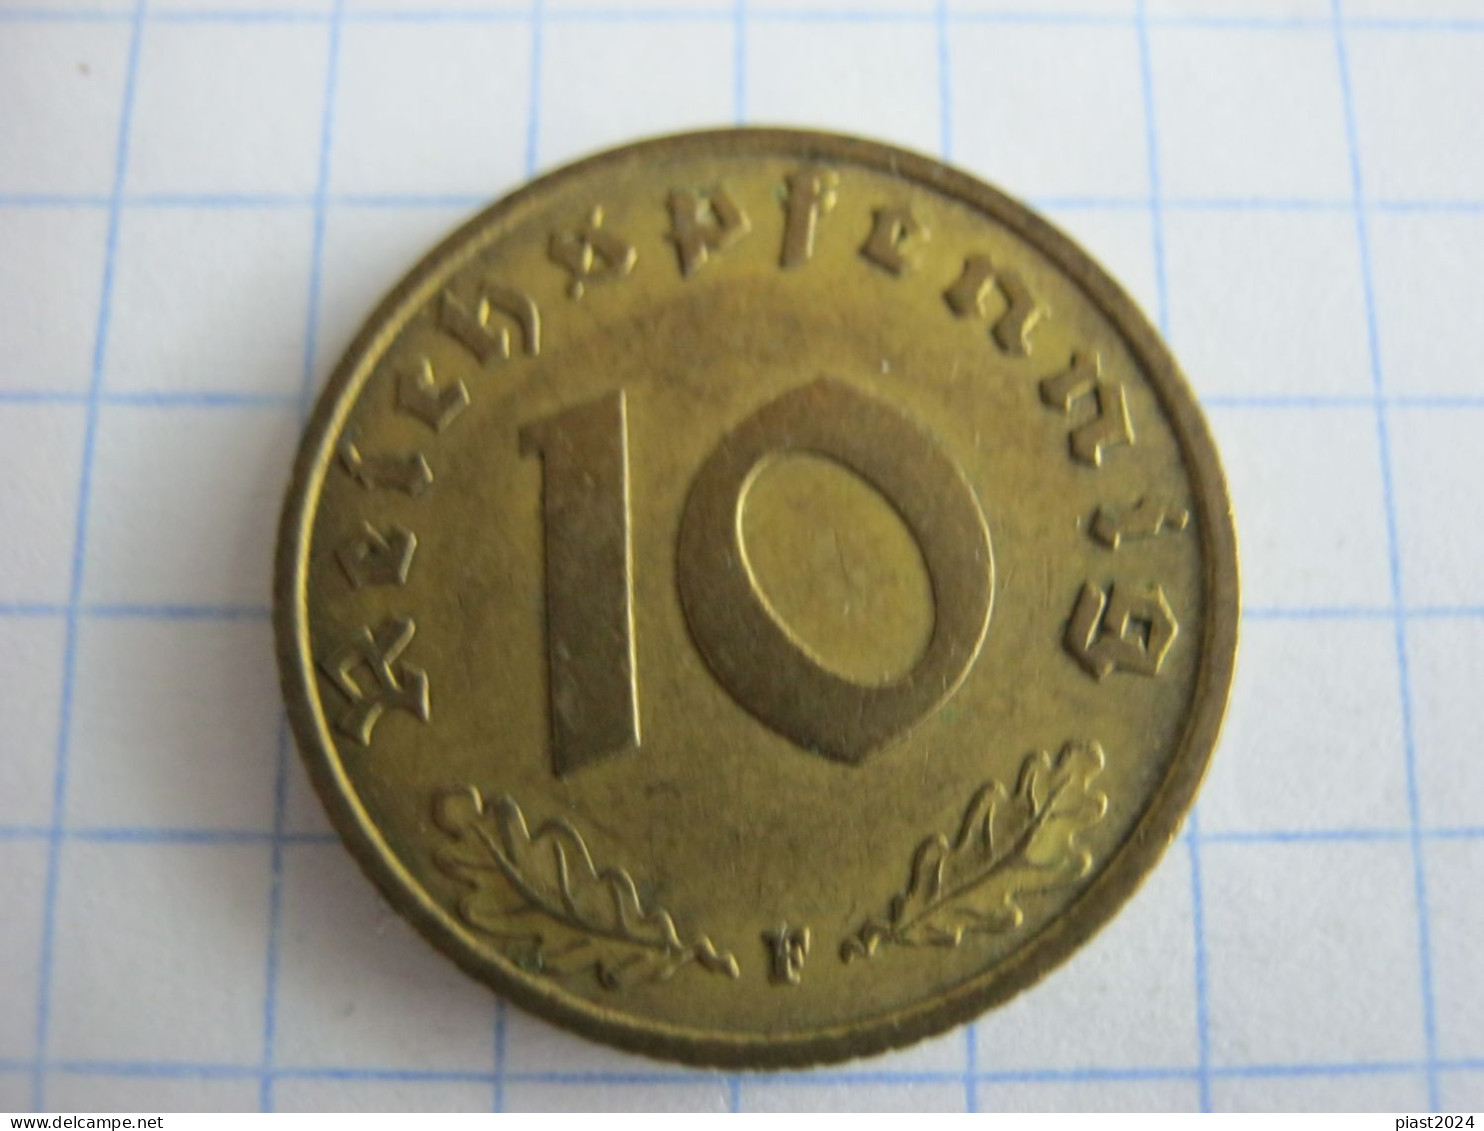 Germany 10 Reichspfennig 1938 F - 10 Reichspfennig